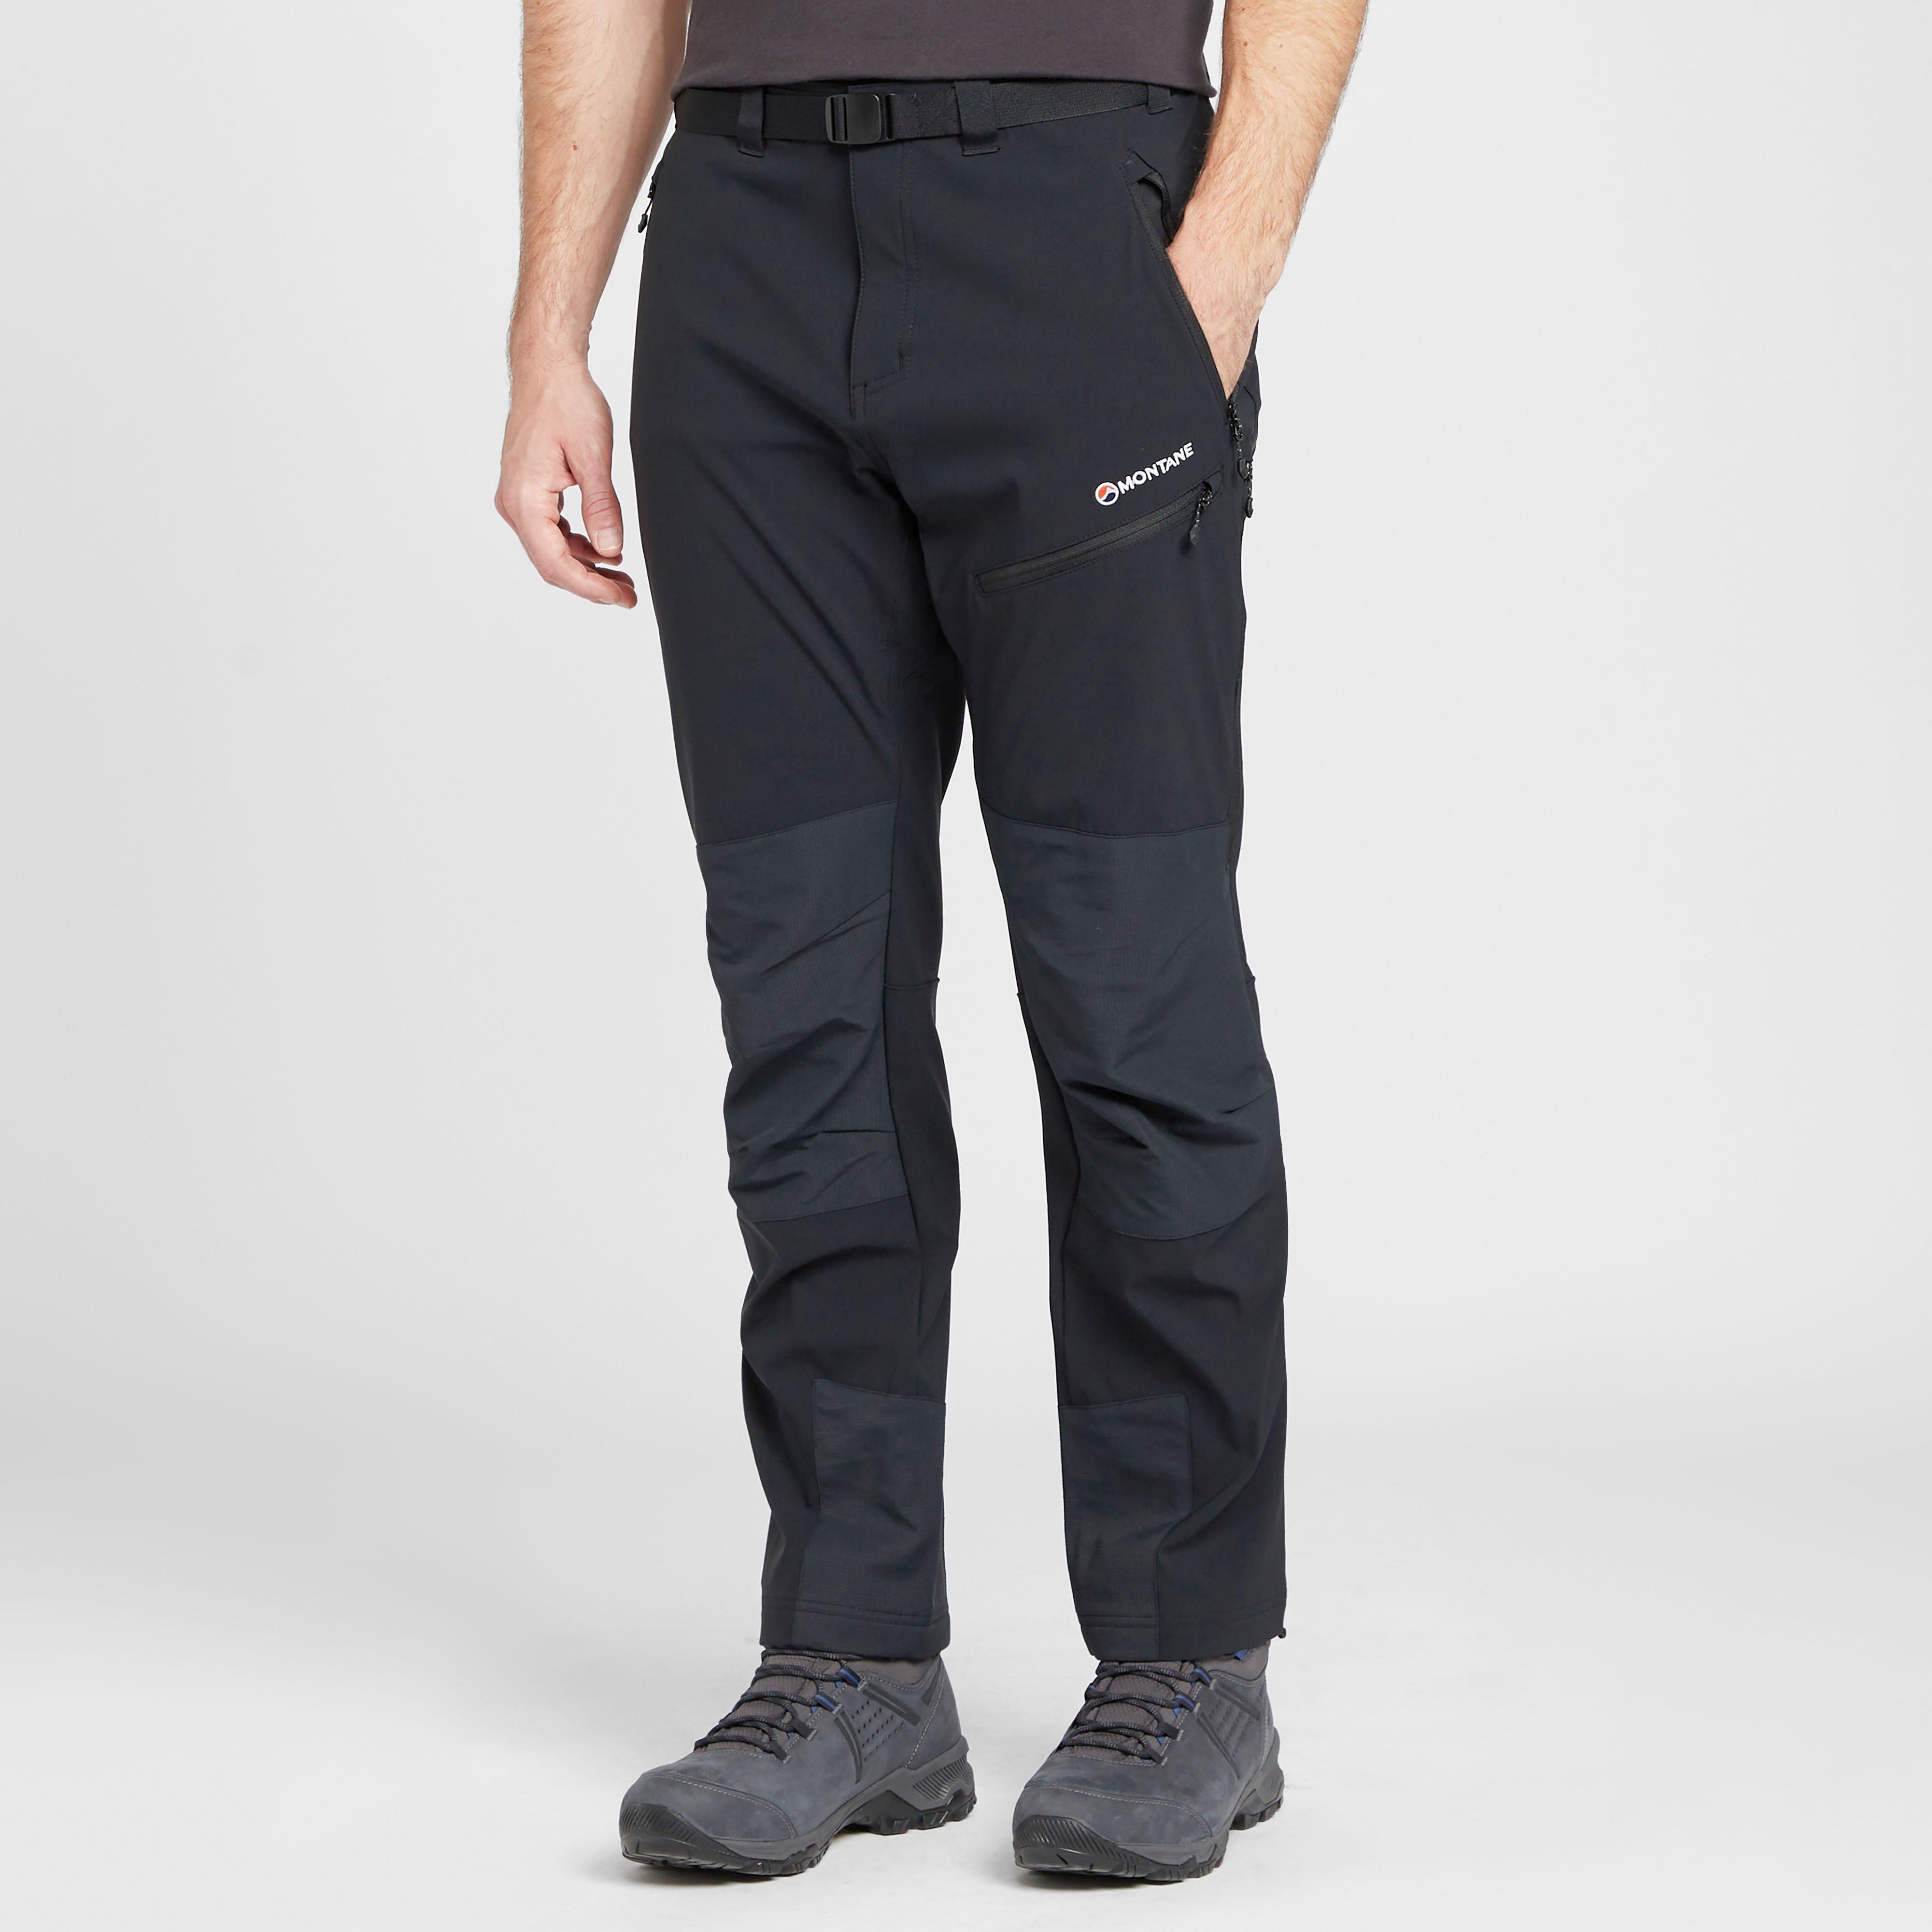 montane men's terra mission trousers (short) - blk, blk